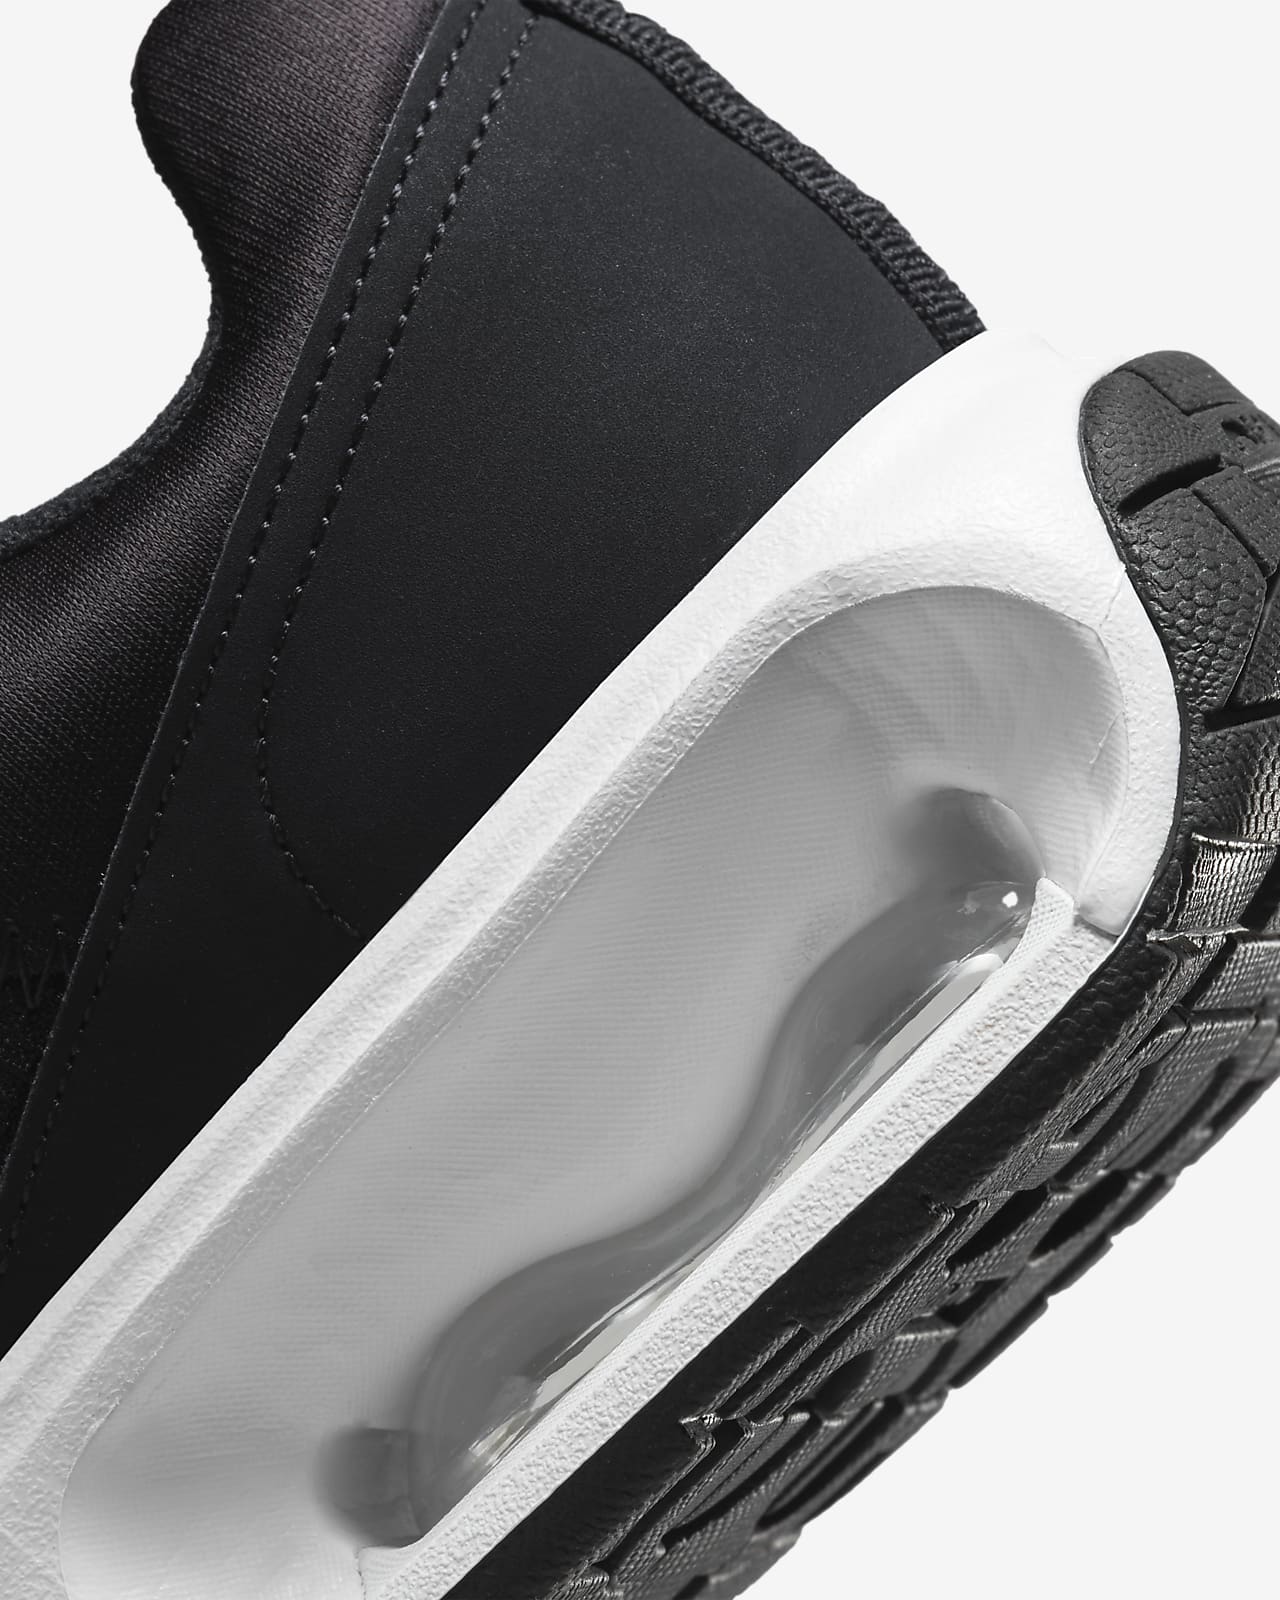 Nike - Zapatillas Air Max Exceed para mujer, negro/blanco/gris oscuro, 4 UK  : : Ropa, Zapatos y Accesorios